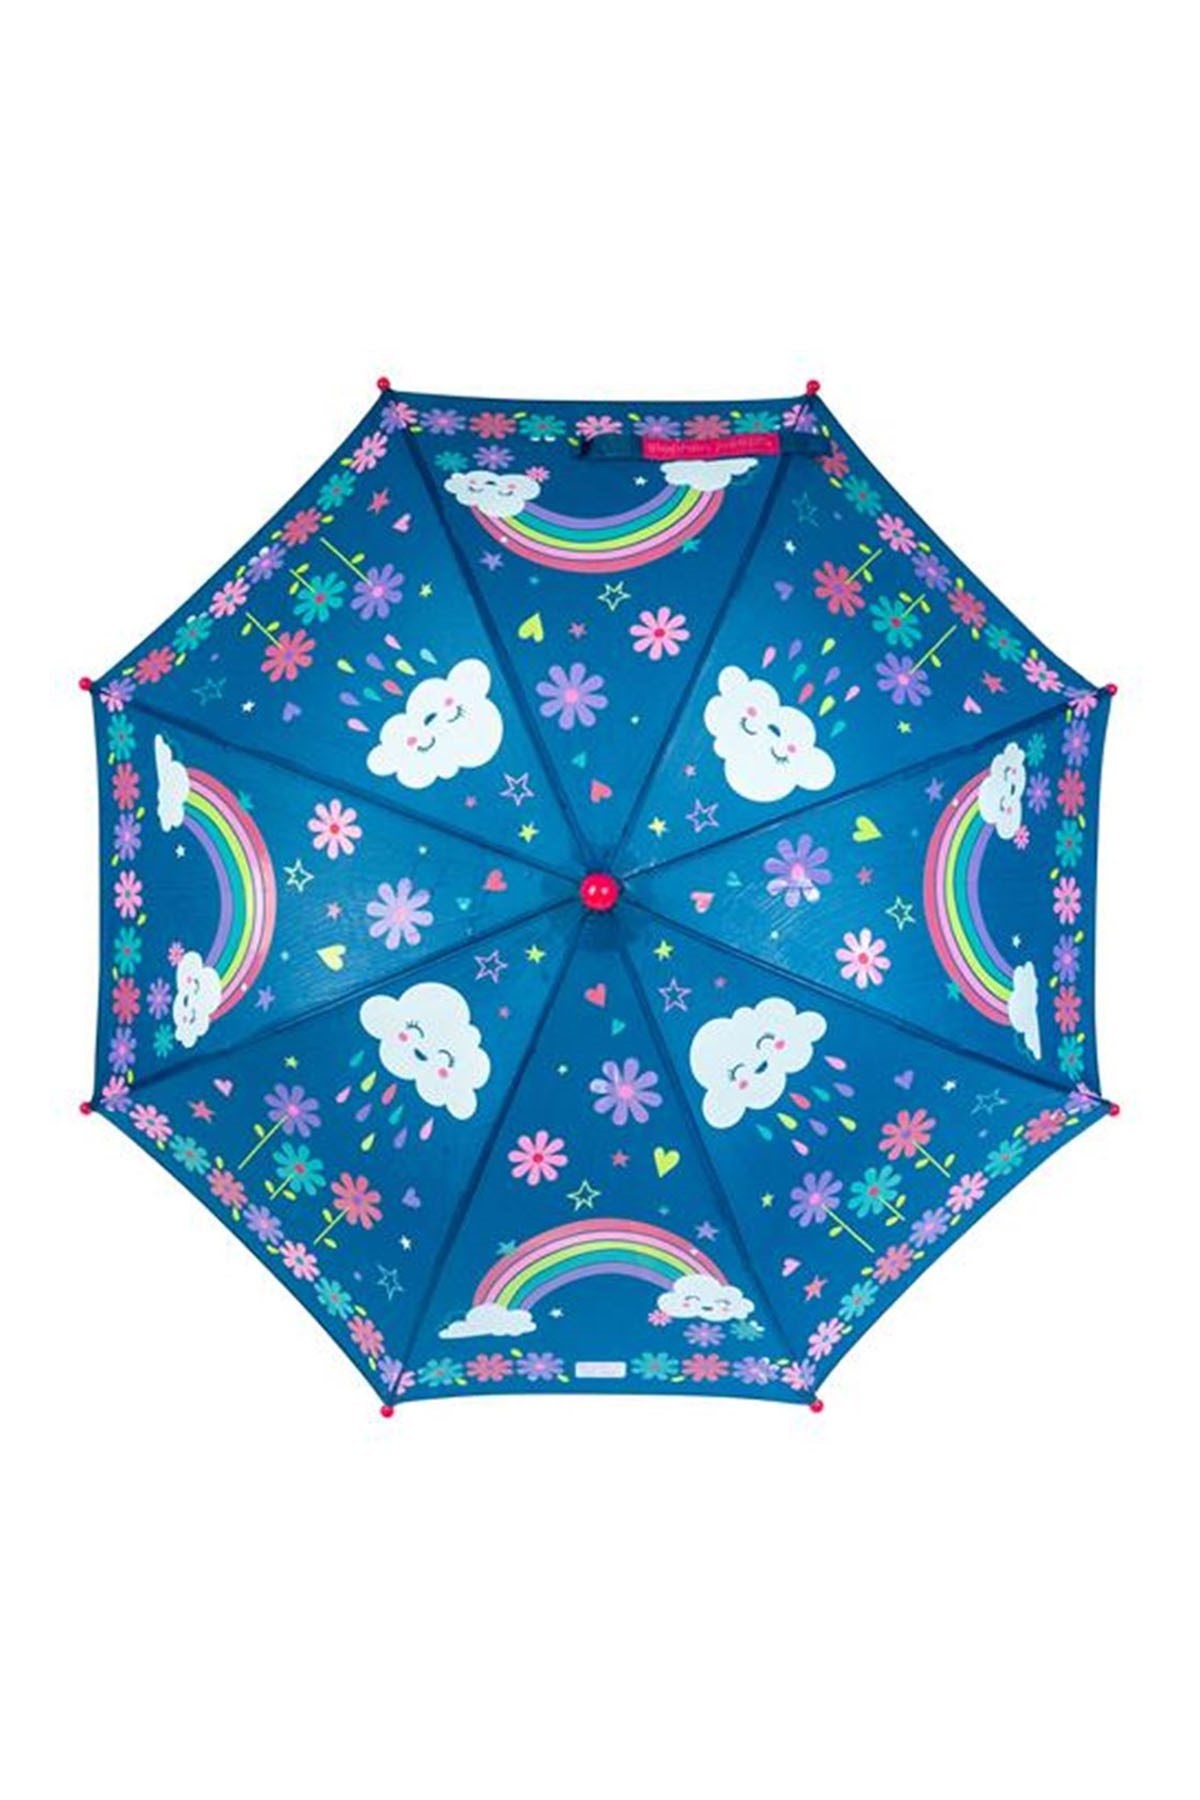 Stephen Joseph Renk Değiştiren Şemsiye Gökkuşağı Renkli